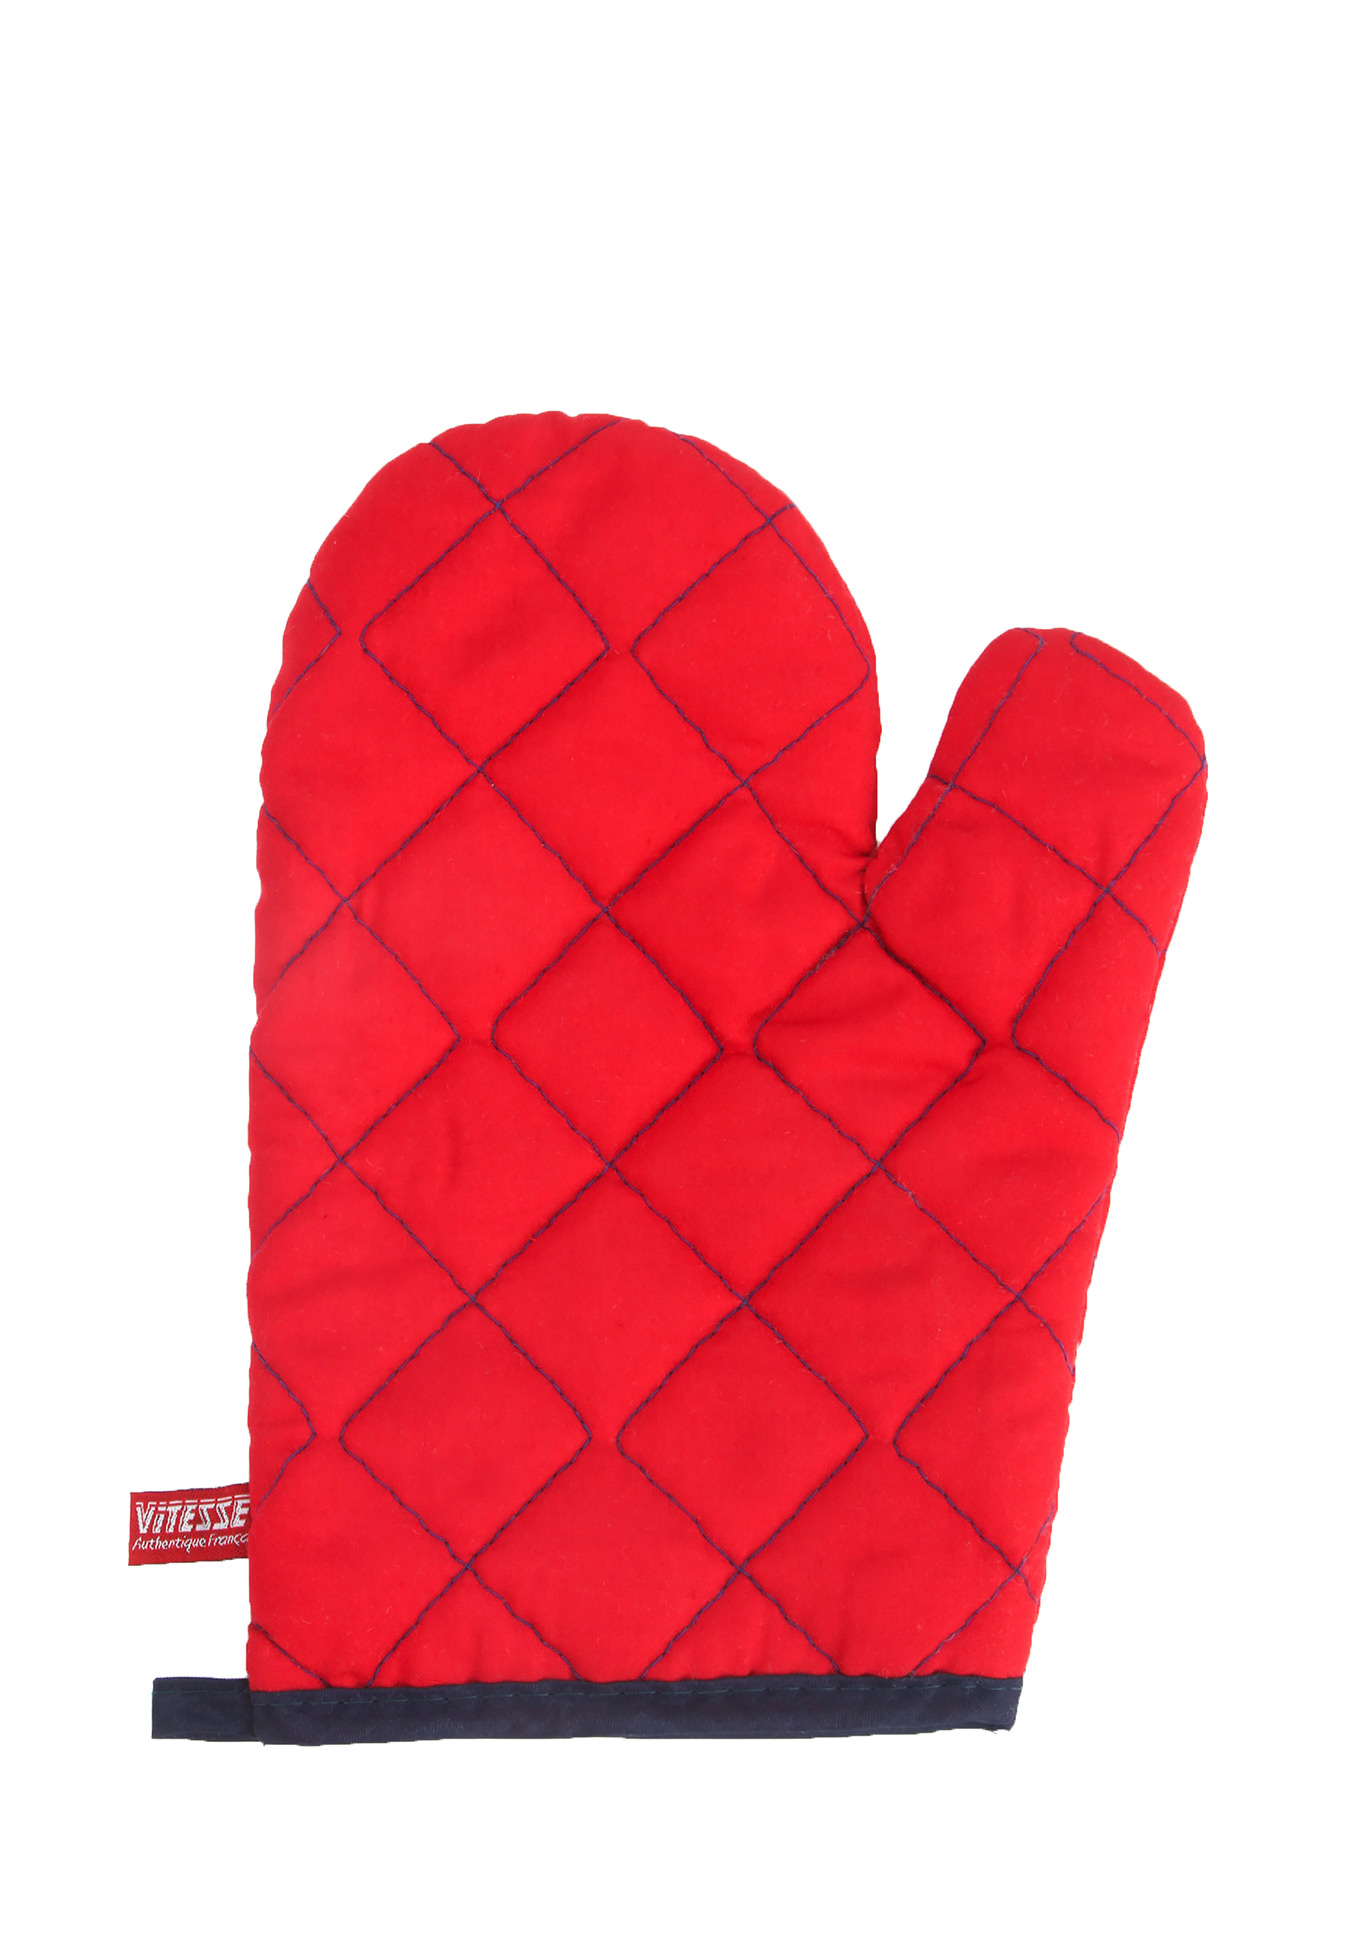 Жаровня + 2 кухонные рукавицы в подарок Vitesse - фото 4